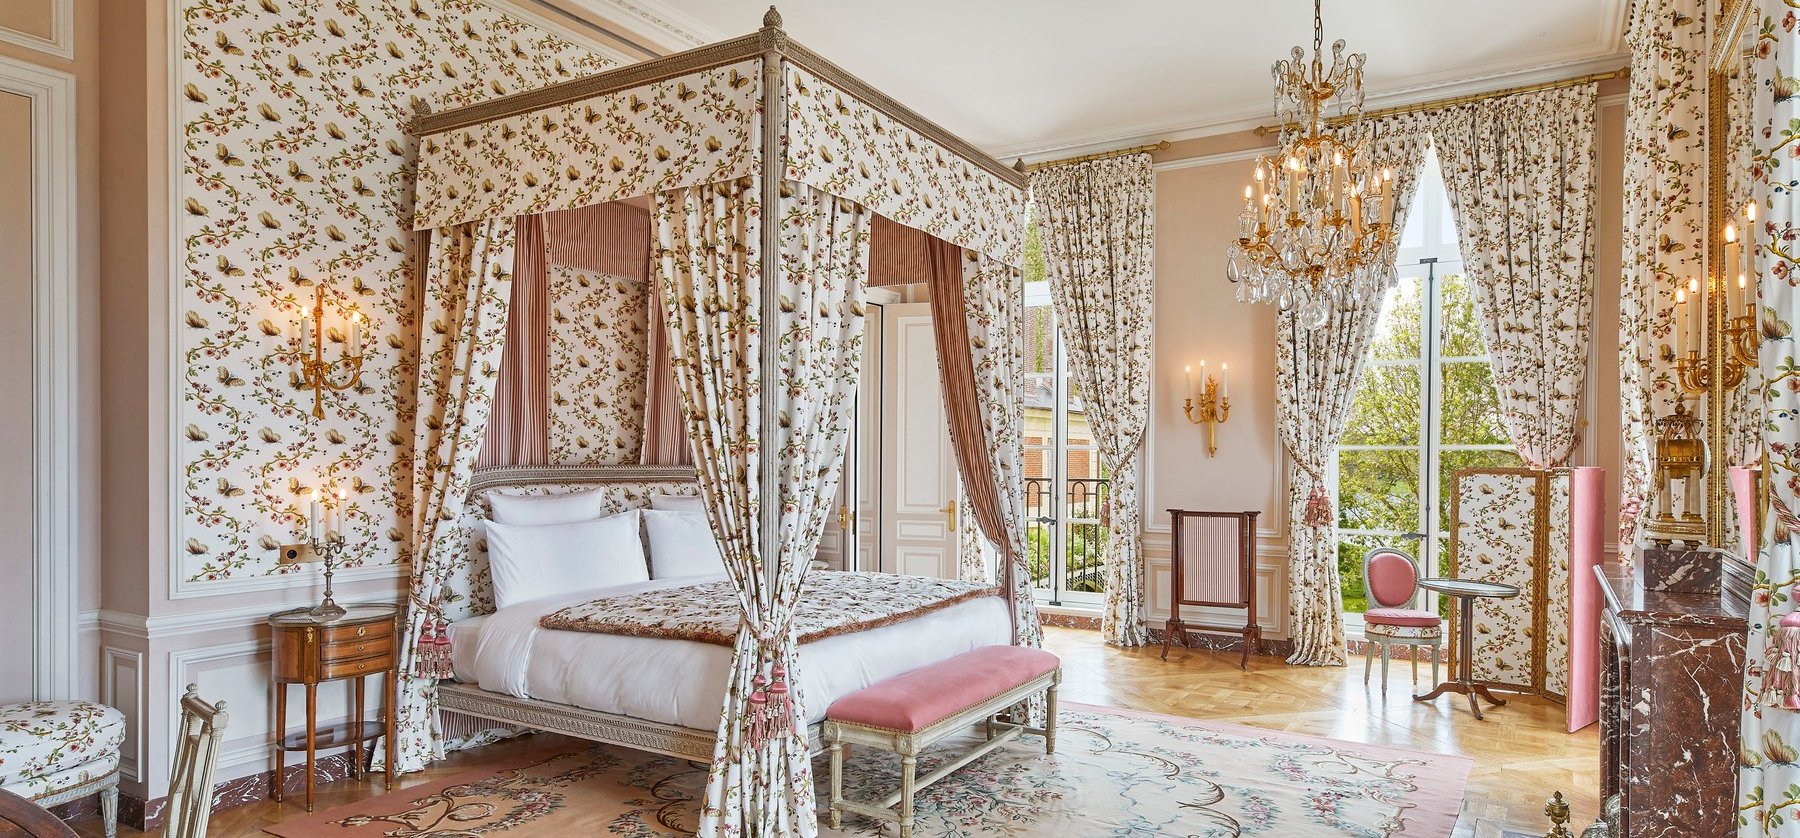 Szeretnél igazi király lenni egy éjszakára? – Még a versailles-i kastélyban is megszállhatsz 600 ezerért!